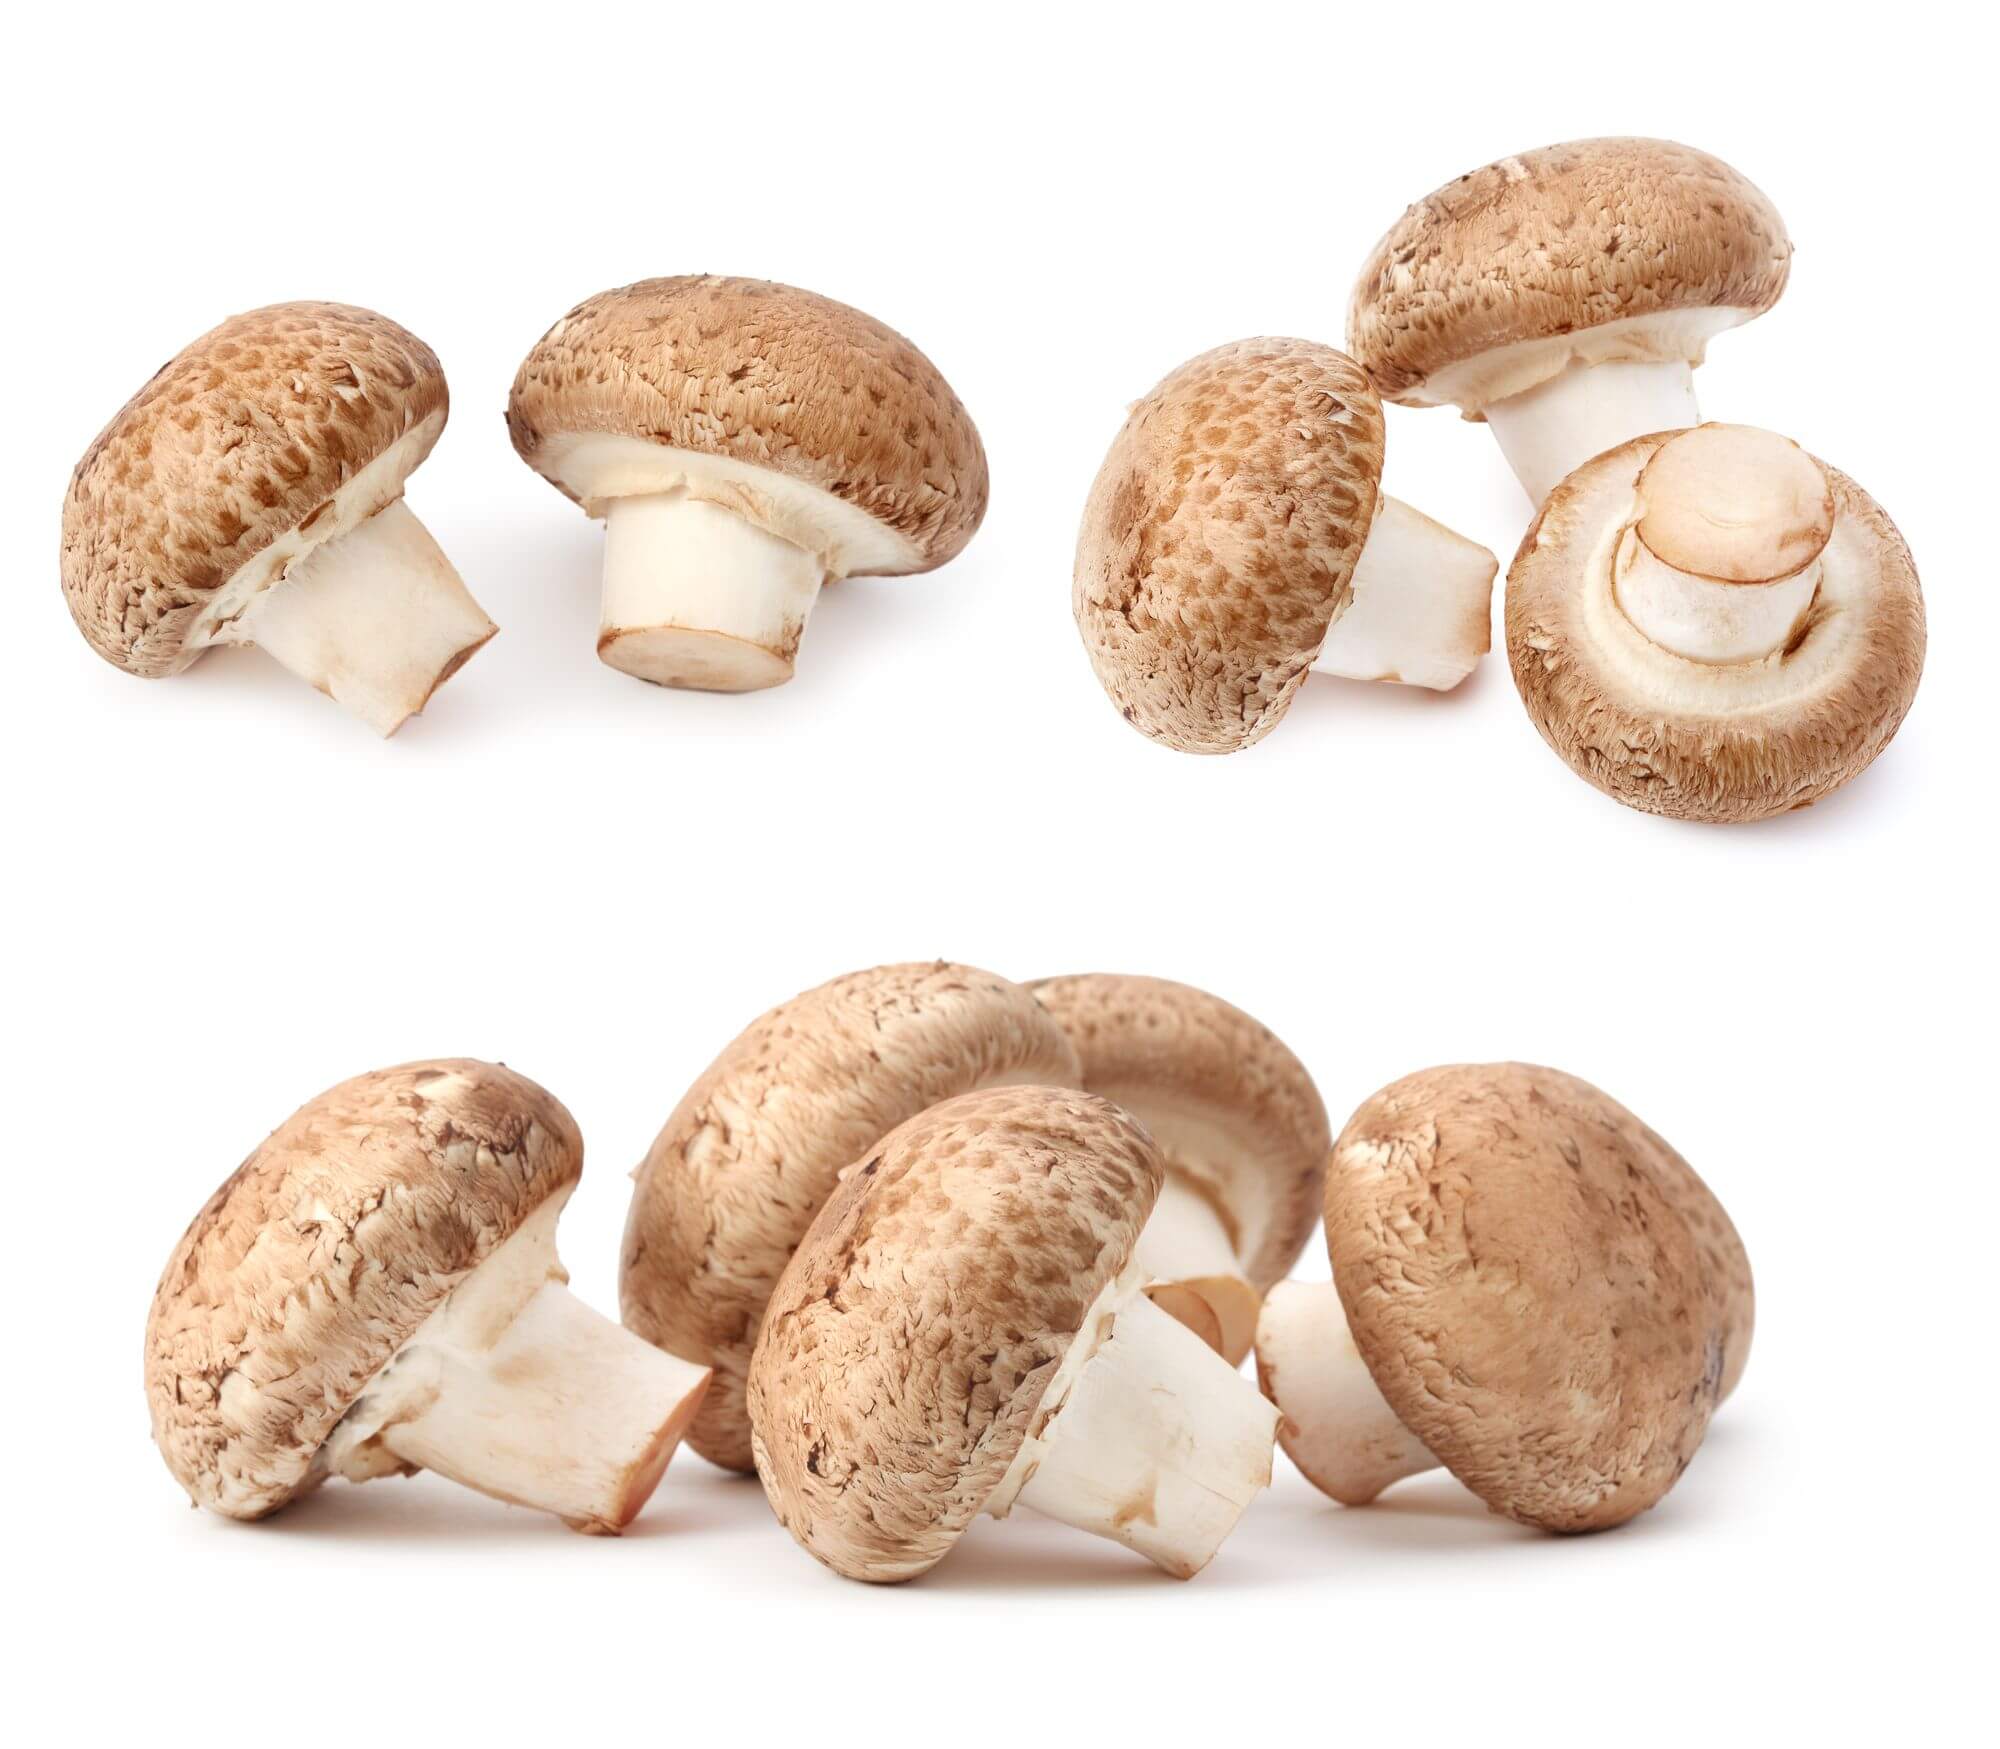 Žampion mandlový – adaptogenní houba s nejvyšším obsahem polysacharidů a zinku